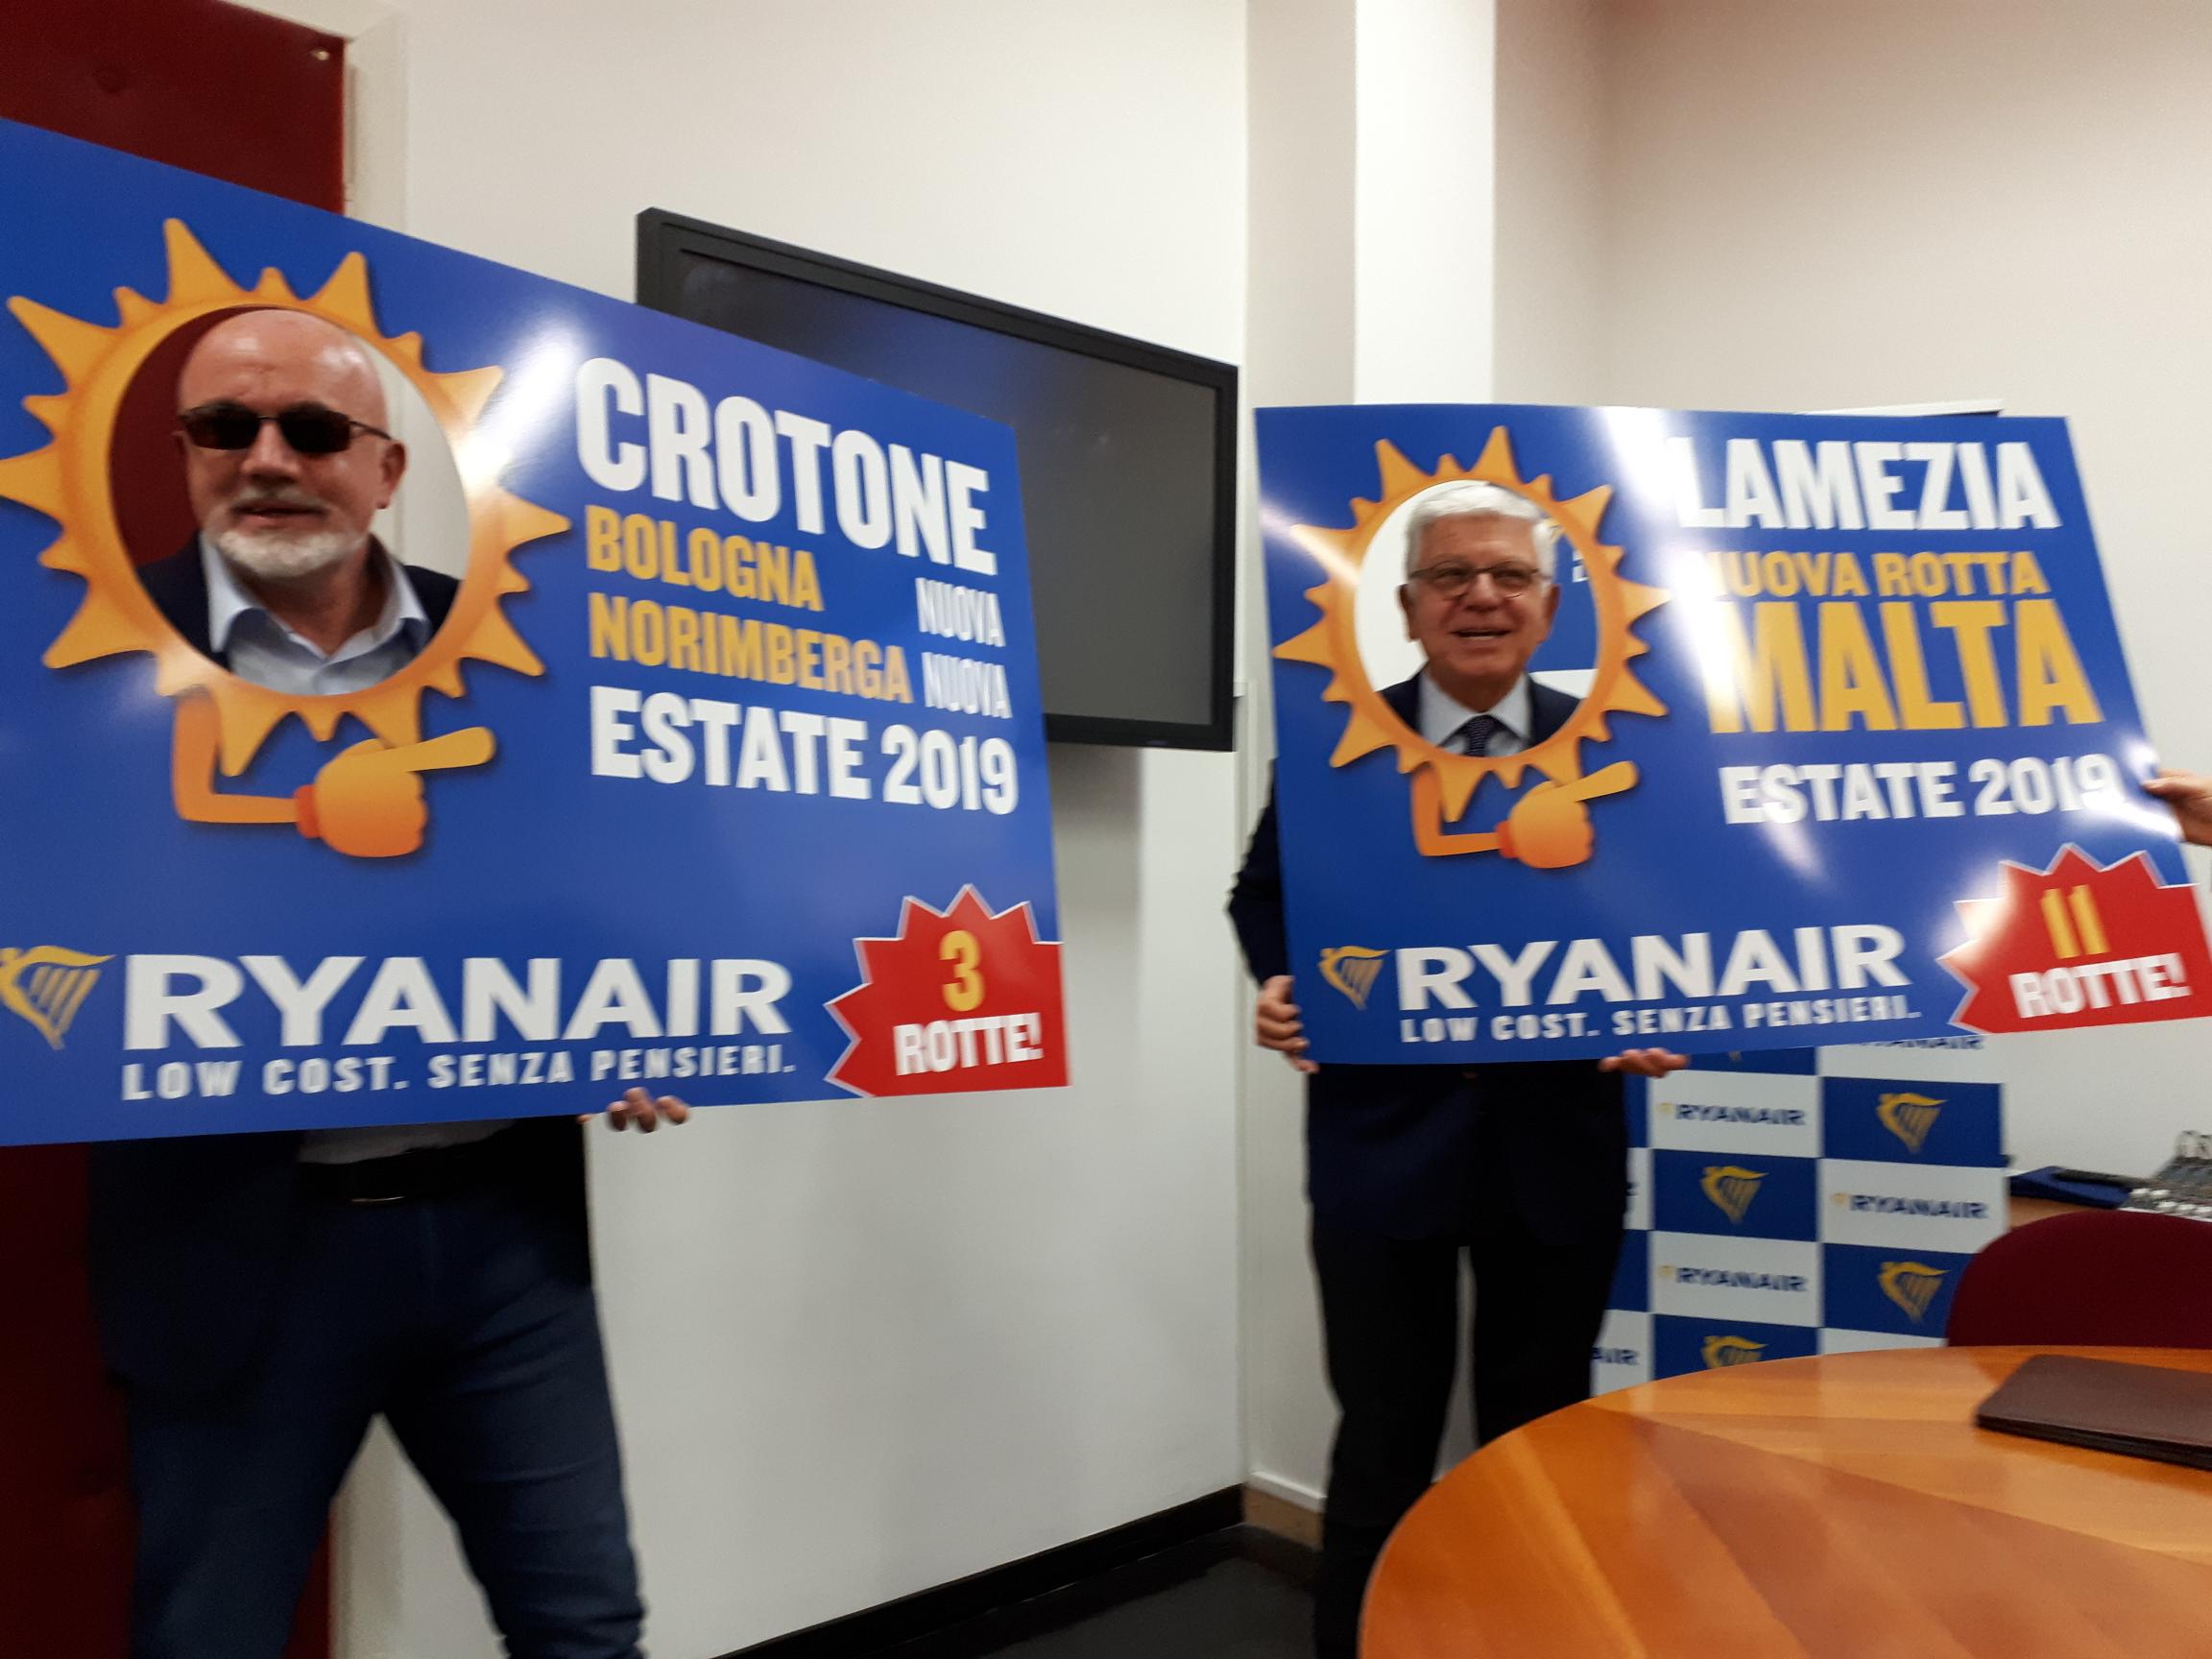 Ryanair Lancia La Programmazione Estate 2019 Dalla Calabria